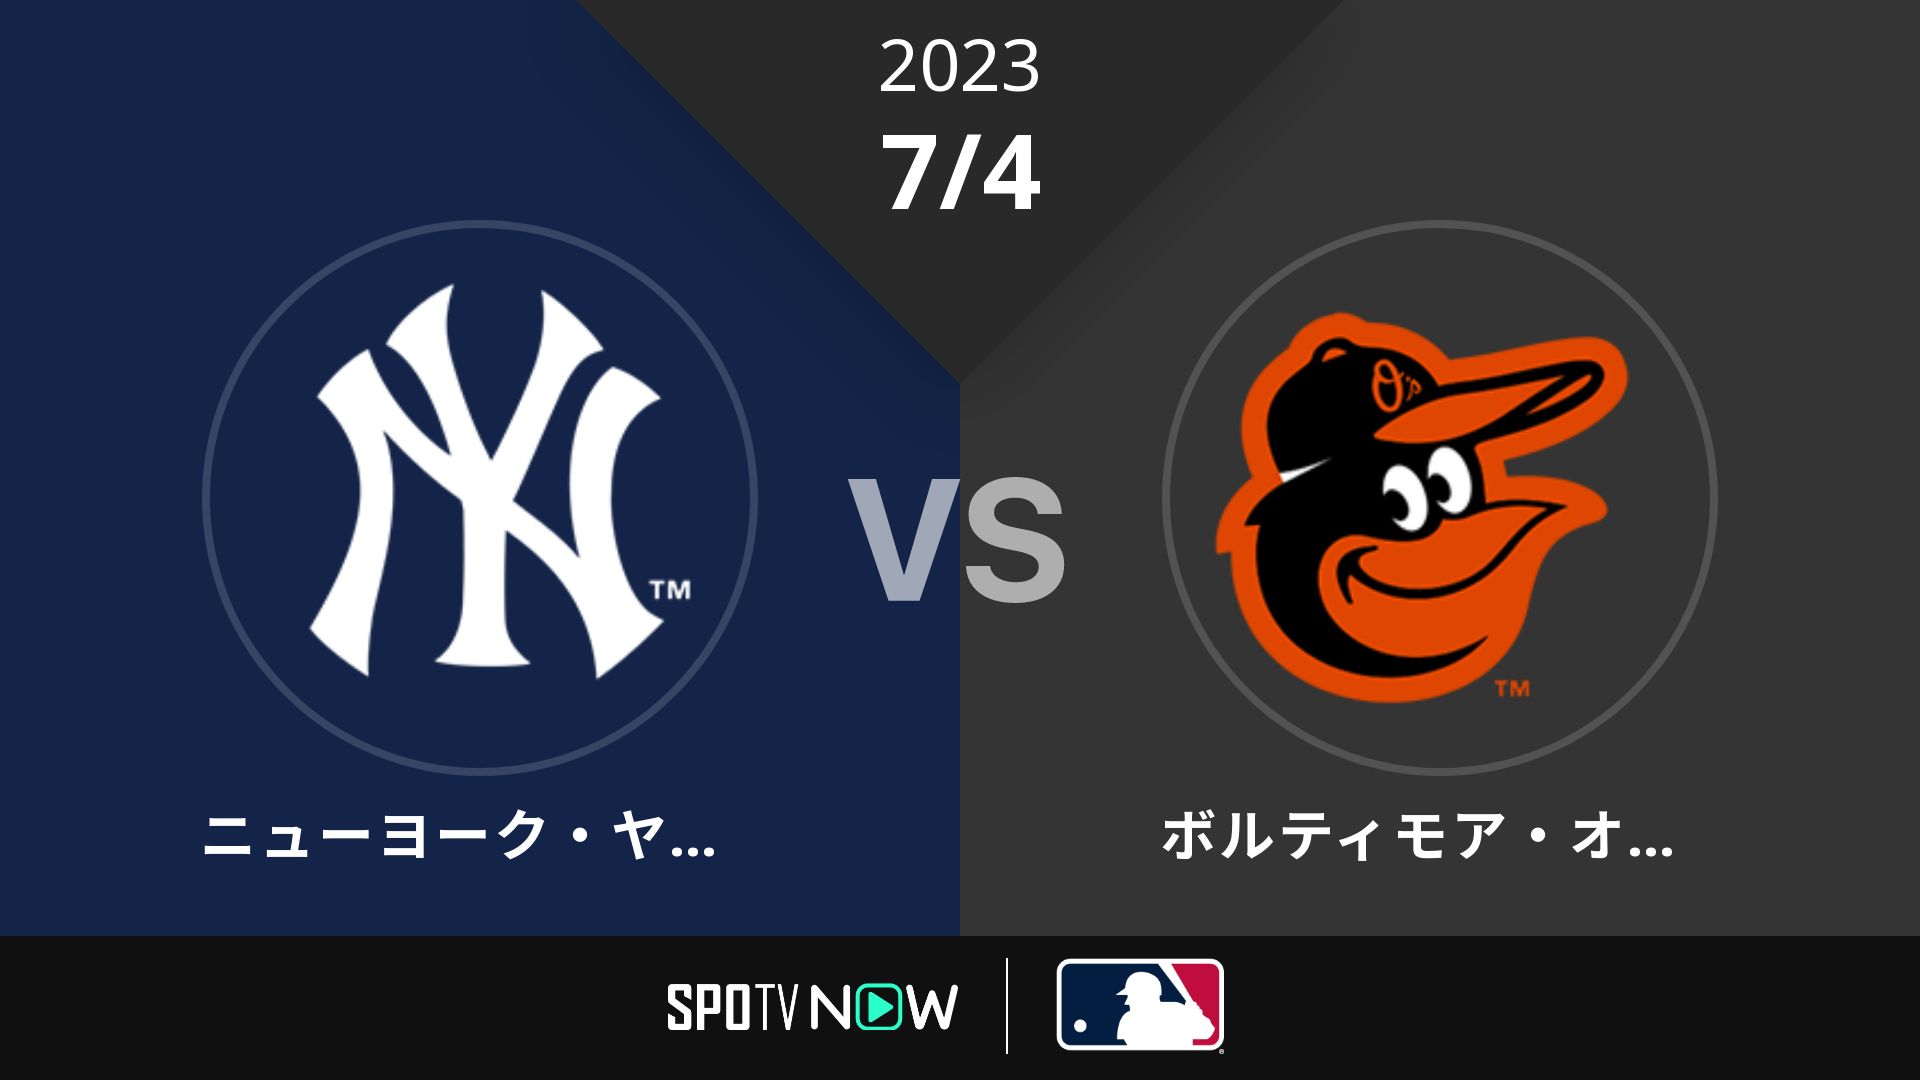 2023/7/4 ヤンキース vs オリオールズ [MLB]